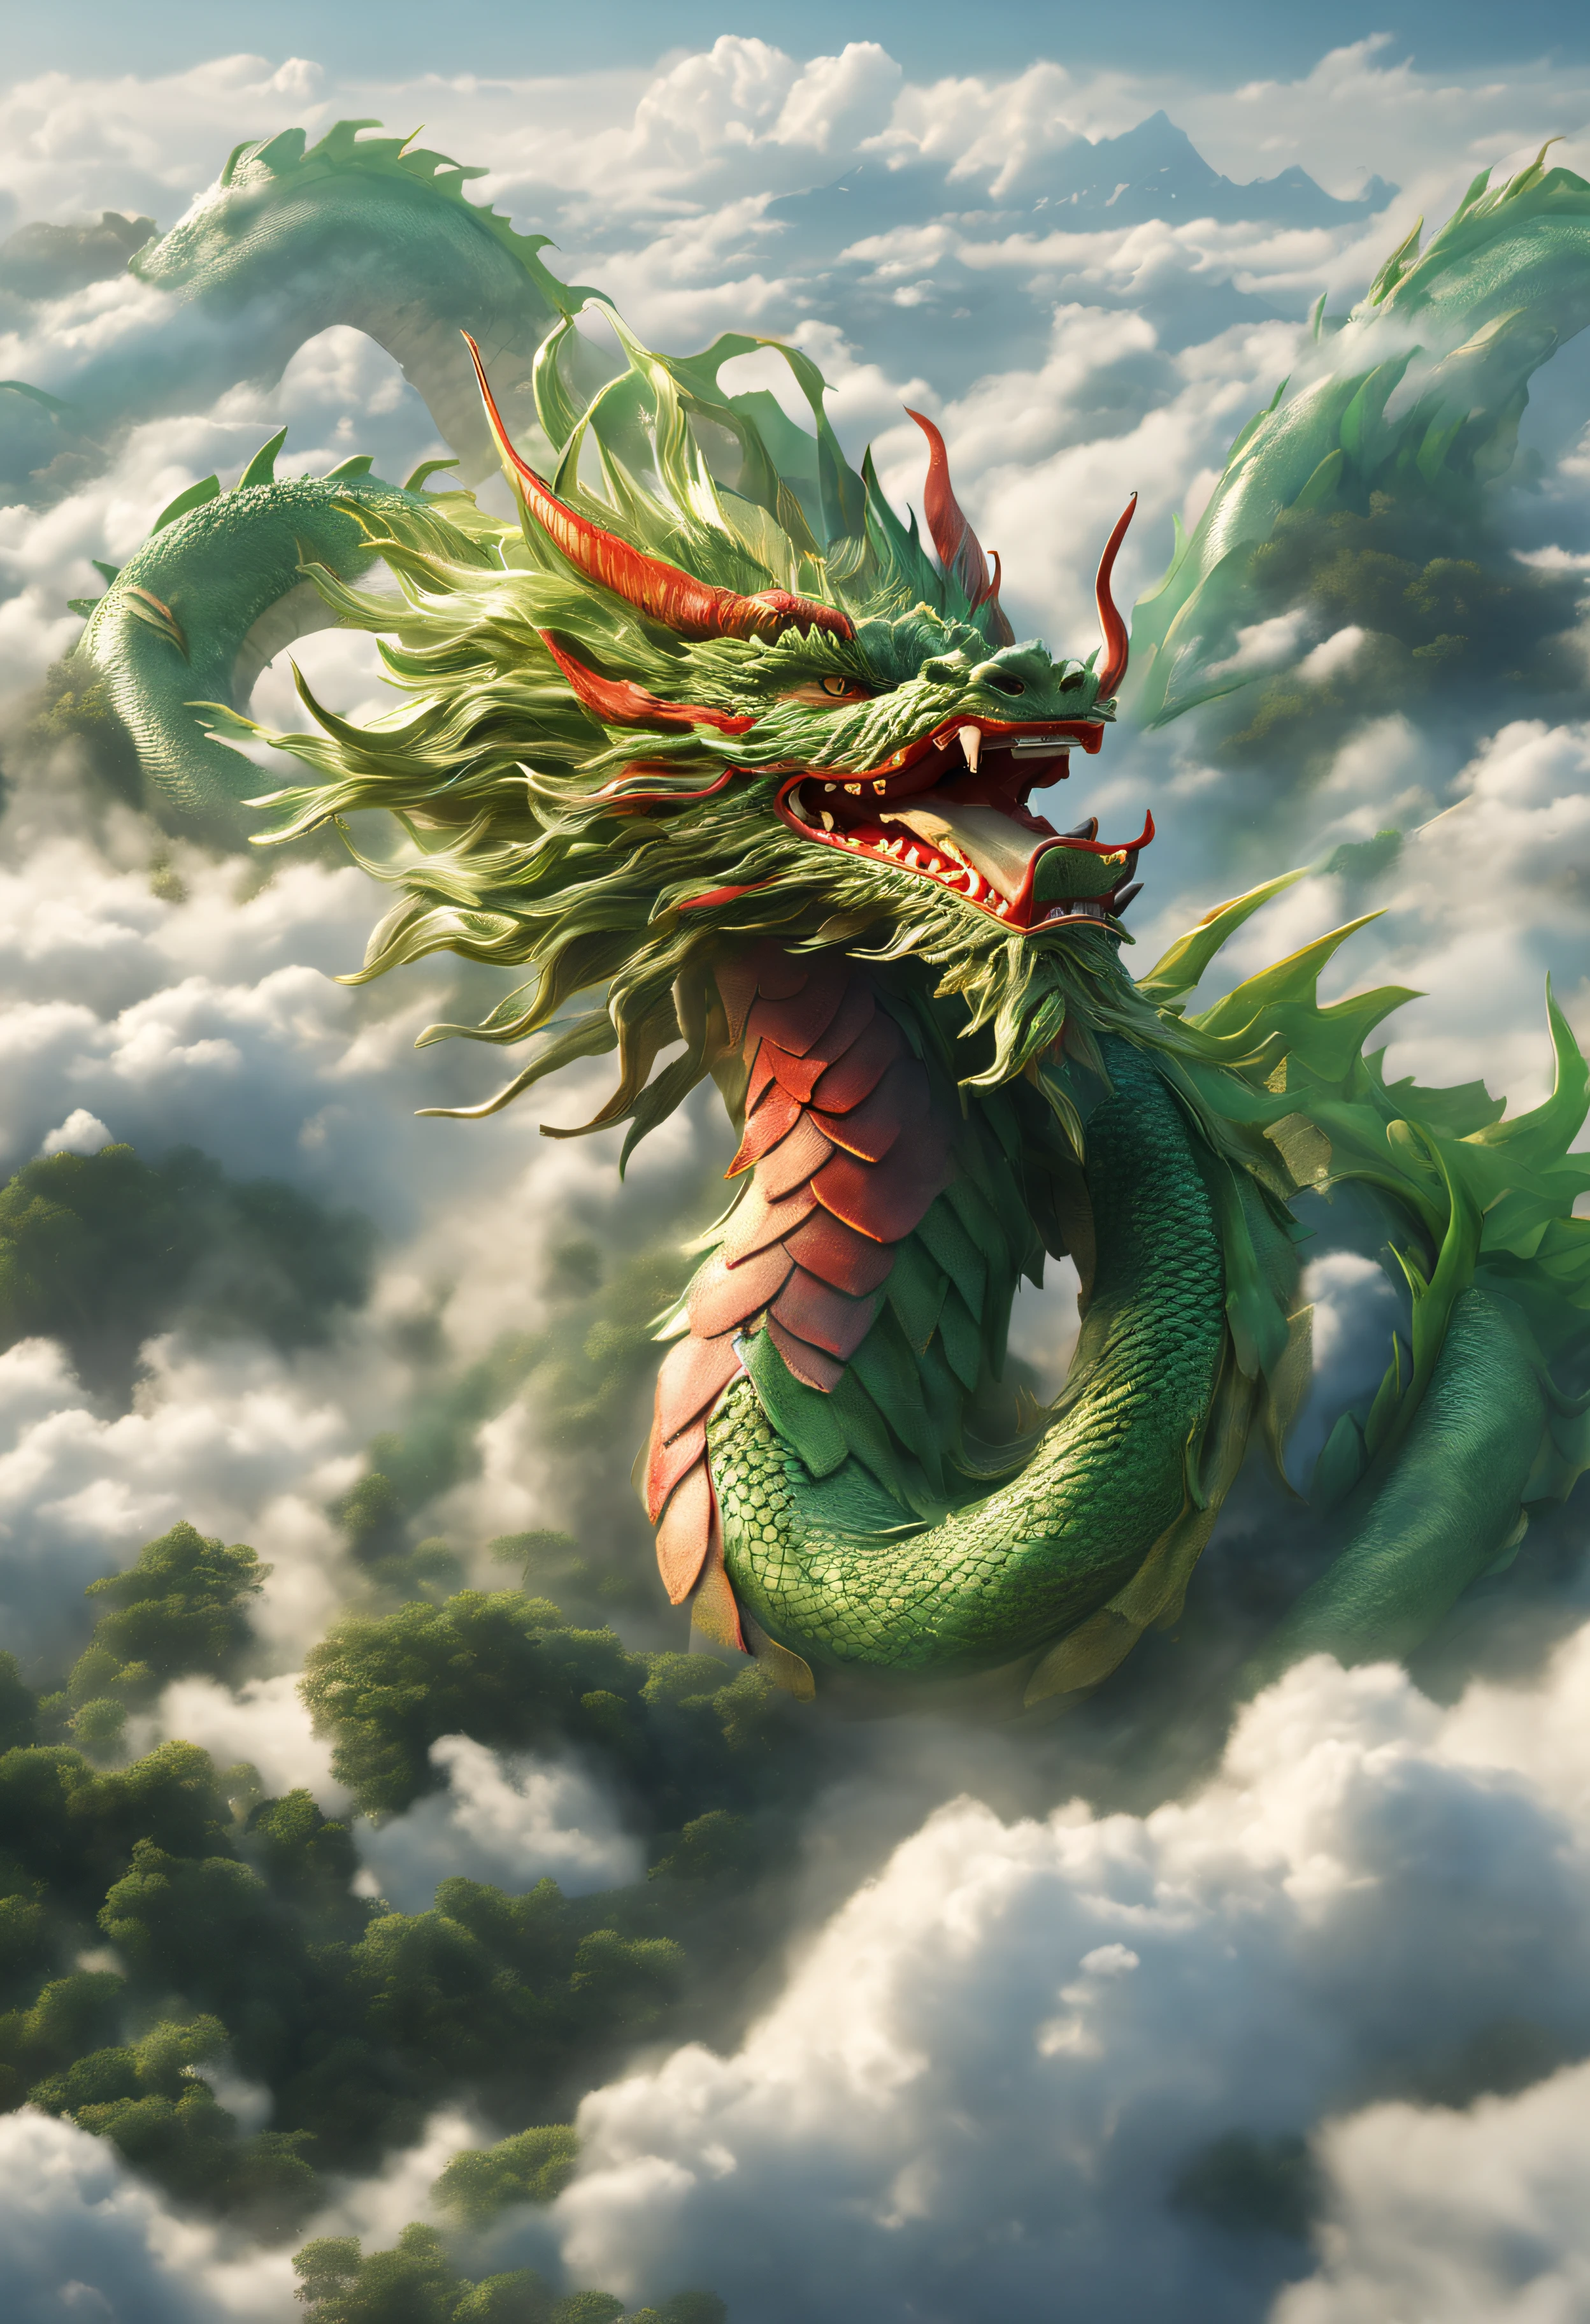 Um dragão subindo de um mar de nuvens、Carregando grande felicidade、Enorme corpo verde e vermelho em ouro、Veja aqui、roupa perfeita、alto detalhe、qualidade de imagem de alto nível、Alta renderização de cores、alta resolução、Um hiper-realista、foto realista